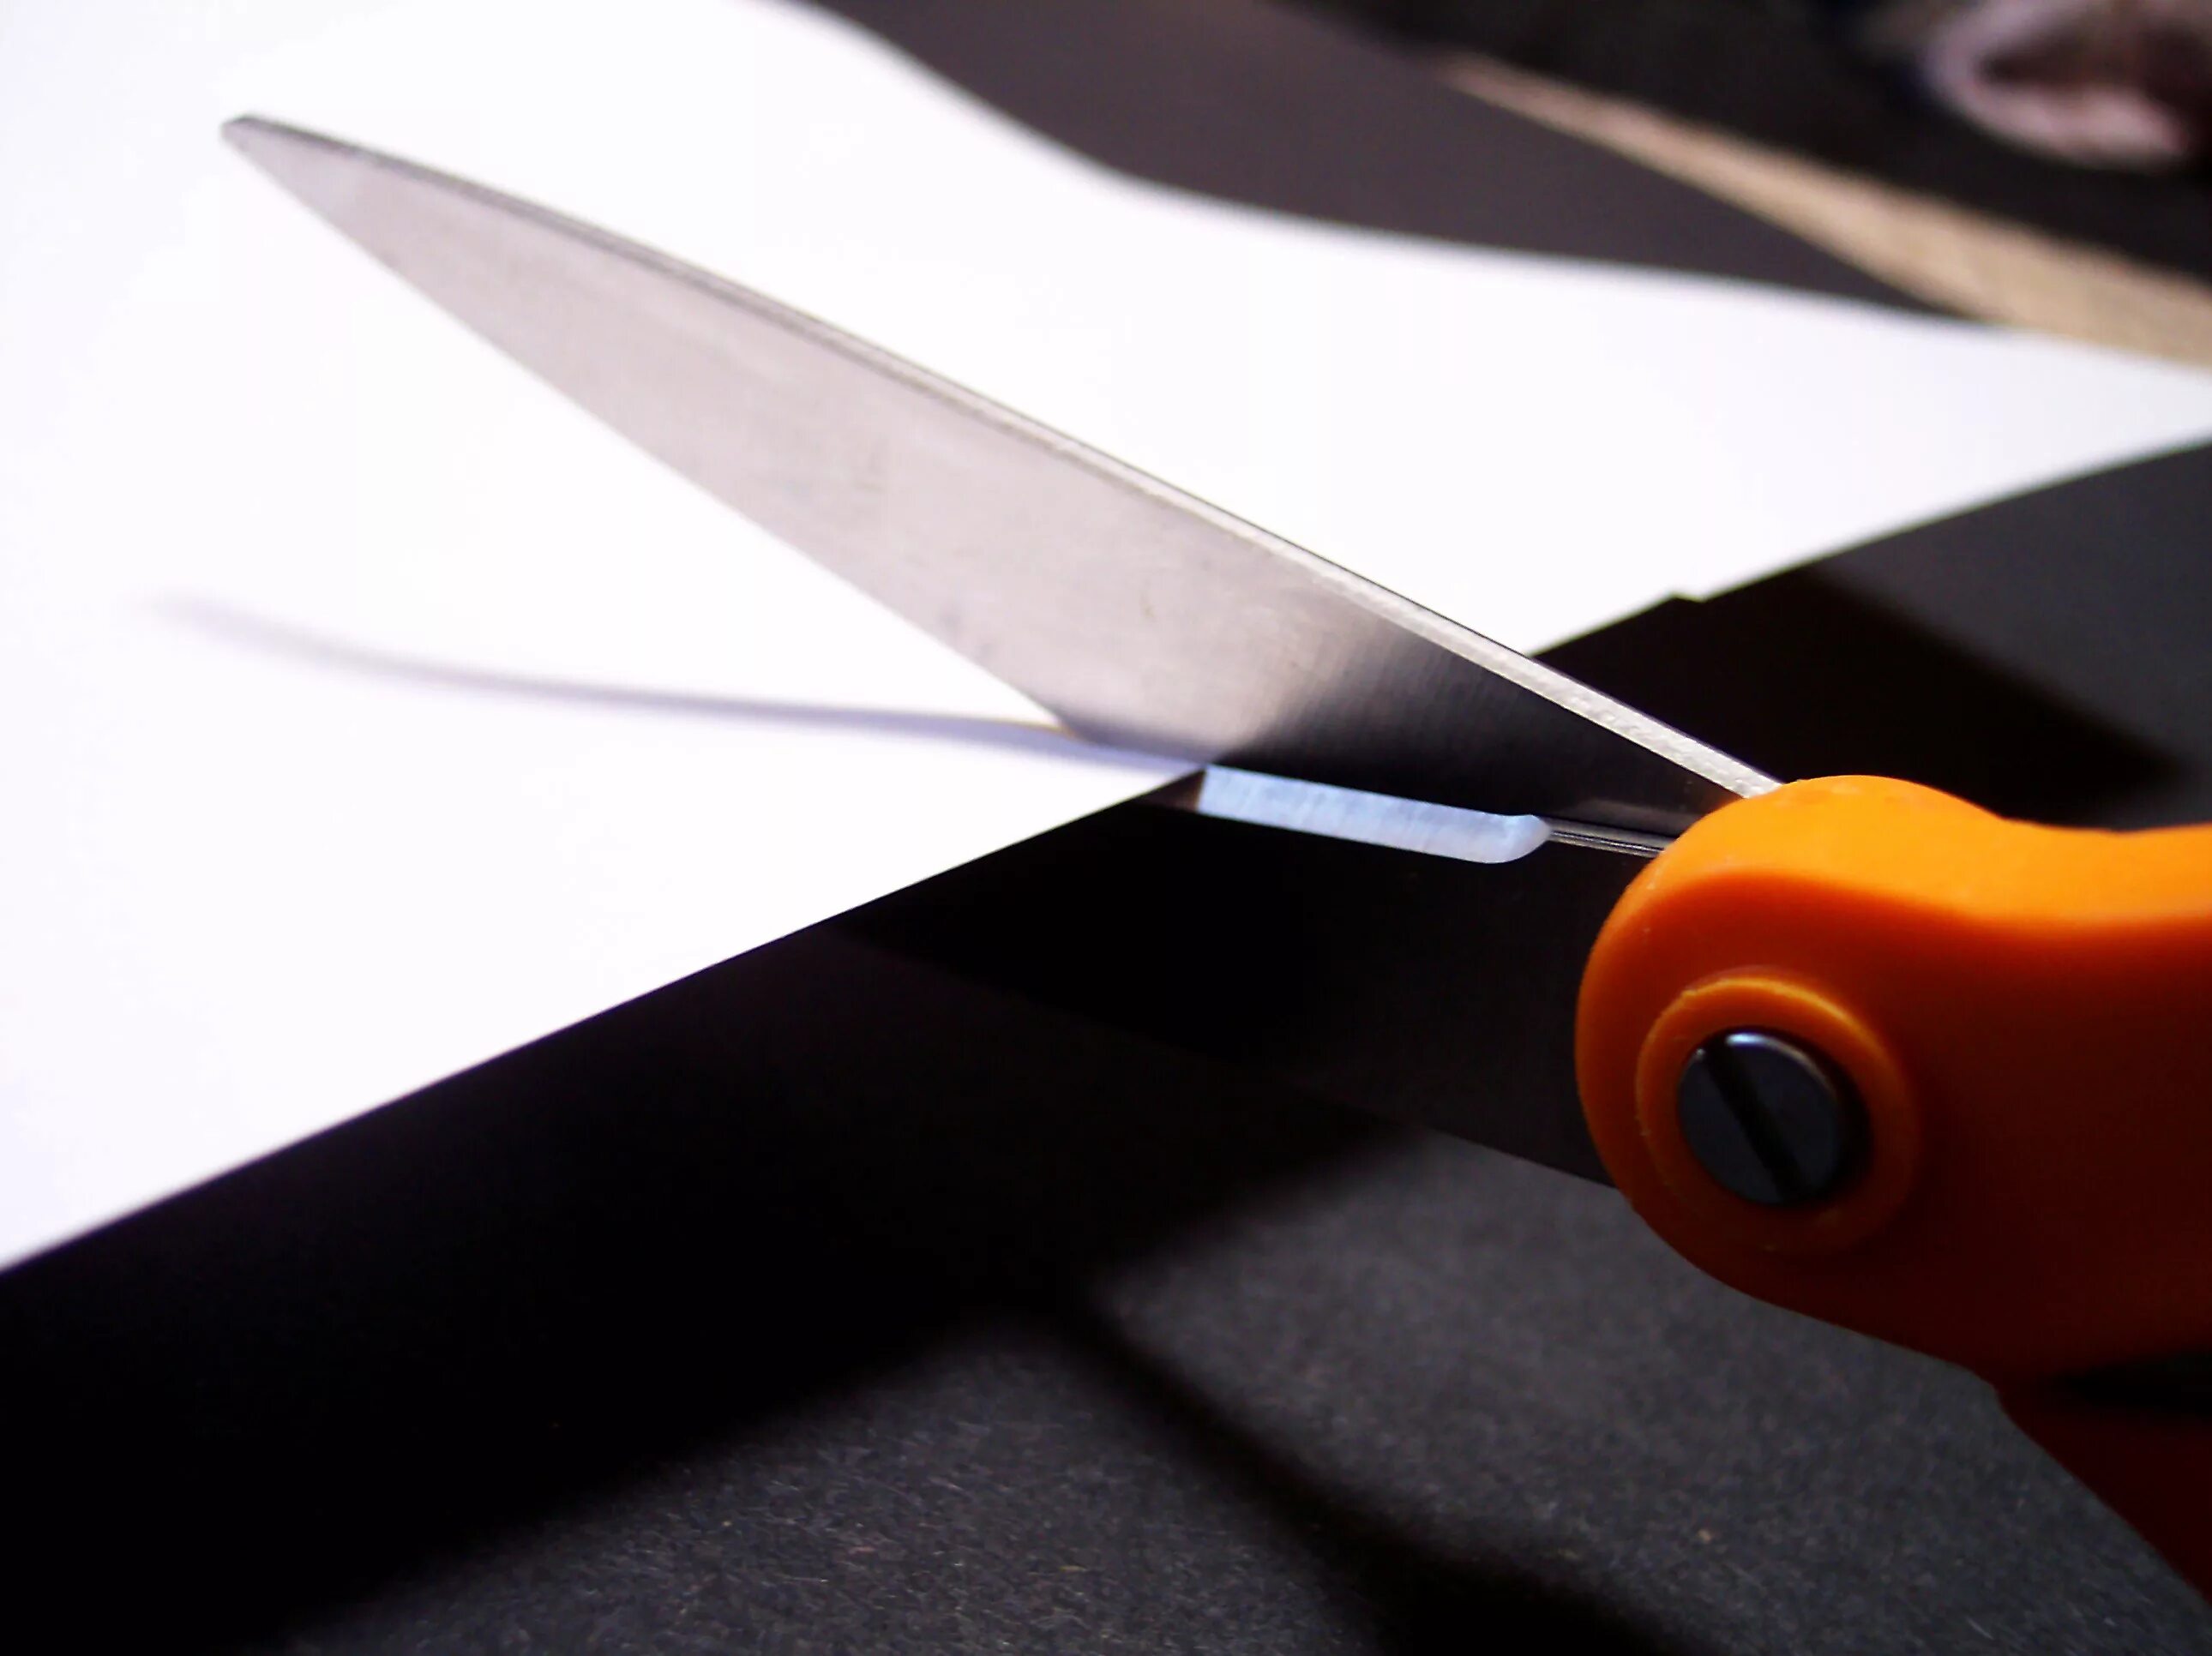 Cutting scissors. Отрезать ножницами. Разрезание бумаги ножницами. Ножницы режущие бумагу. Ножницы режут бумагу.